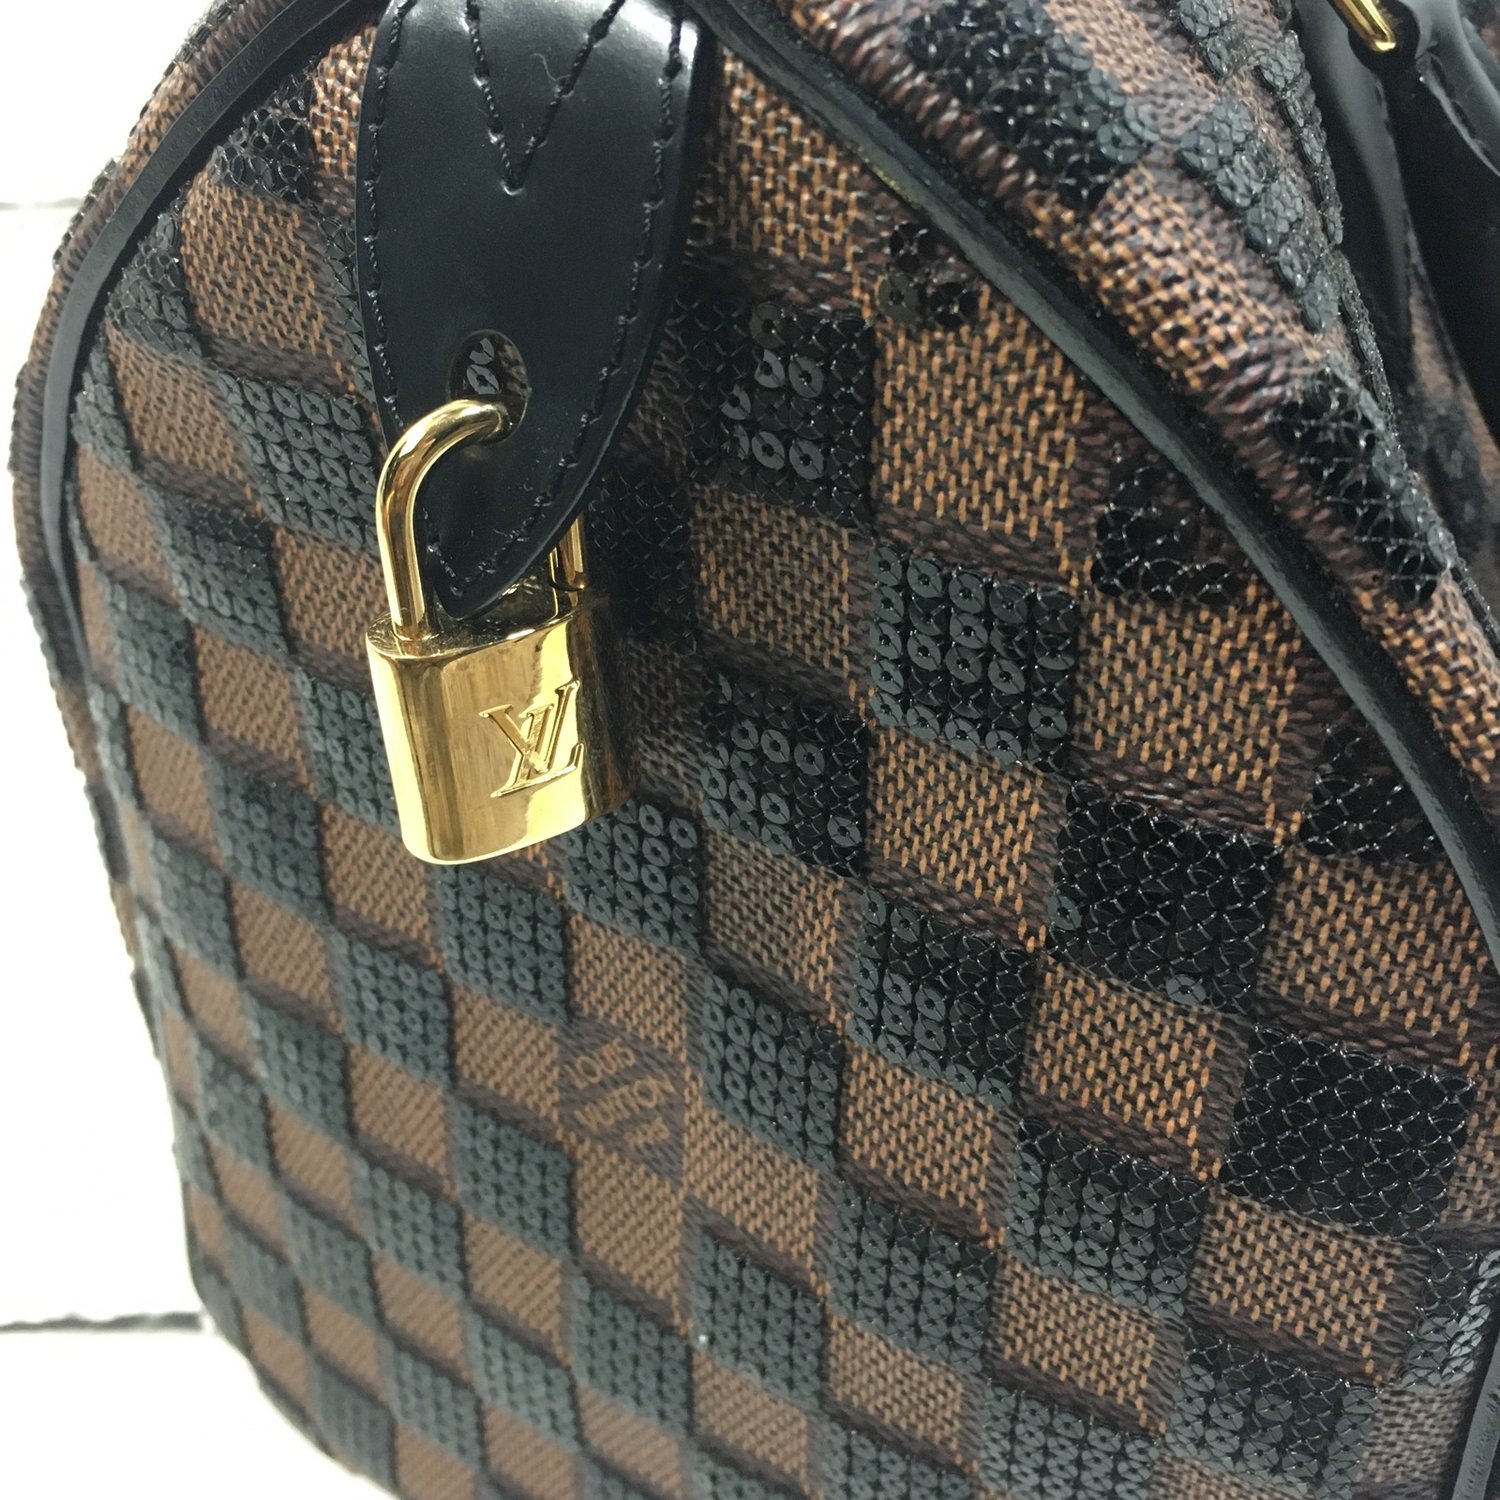 WGACA Louis Vuitton Damier Paillettes Speedy 30 - Black – Kith